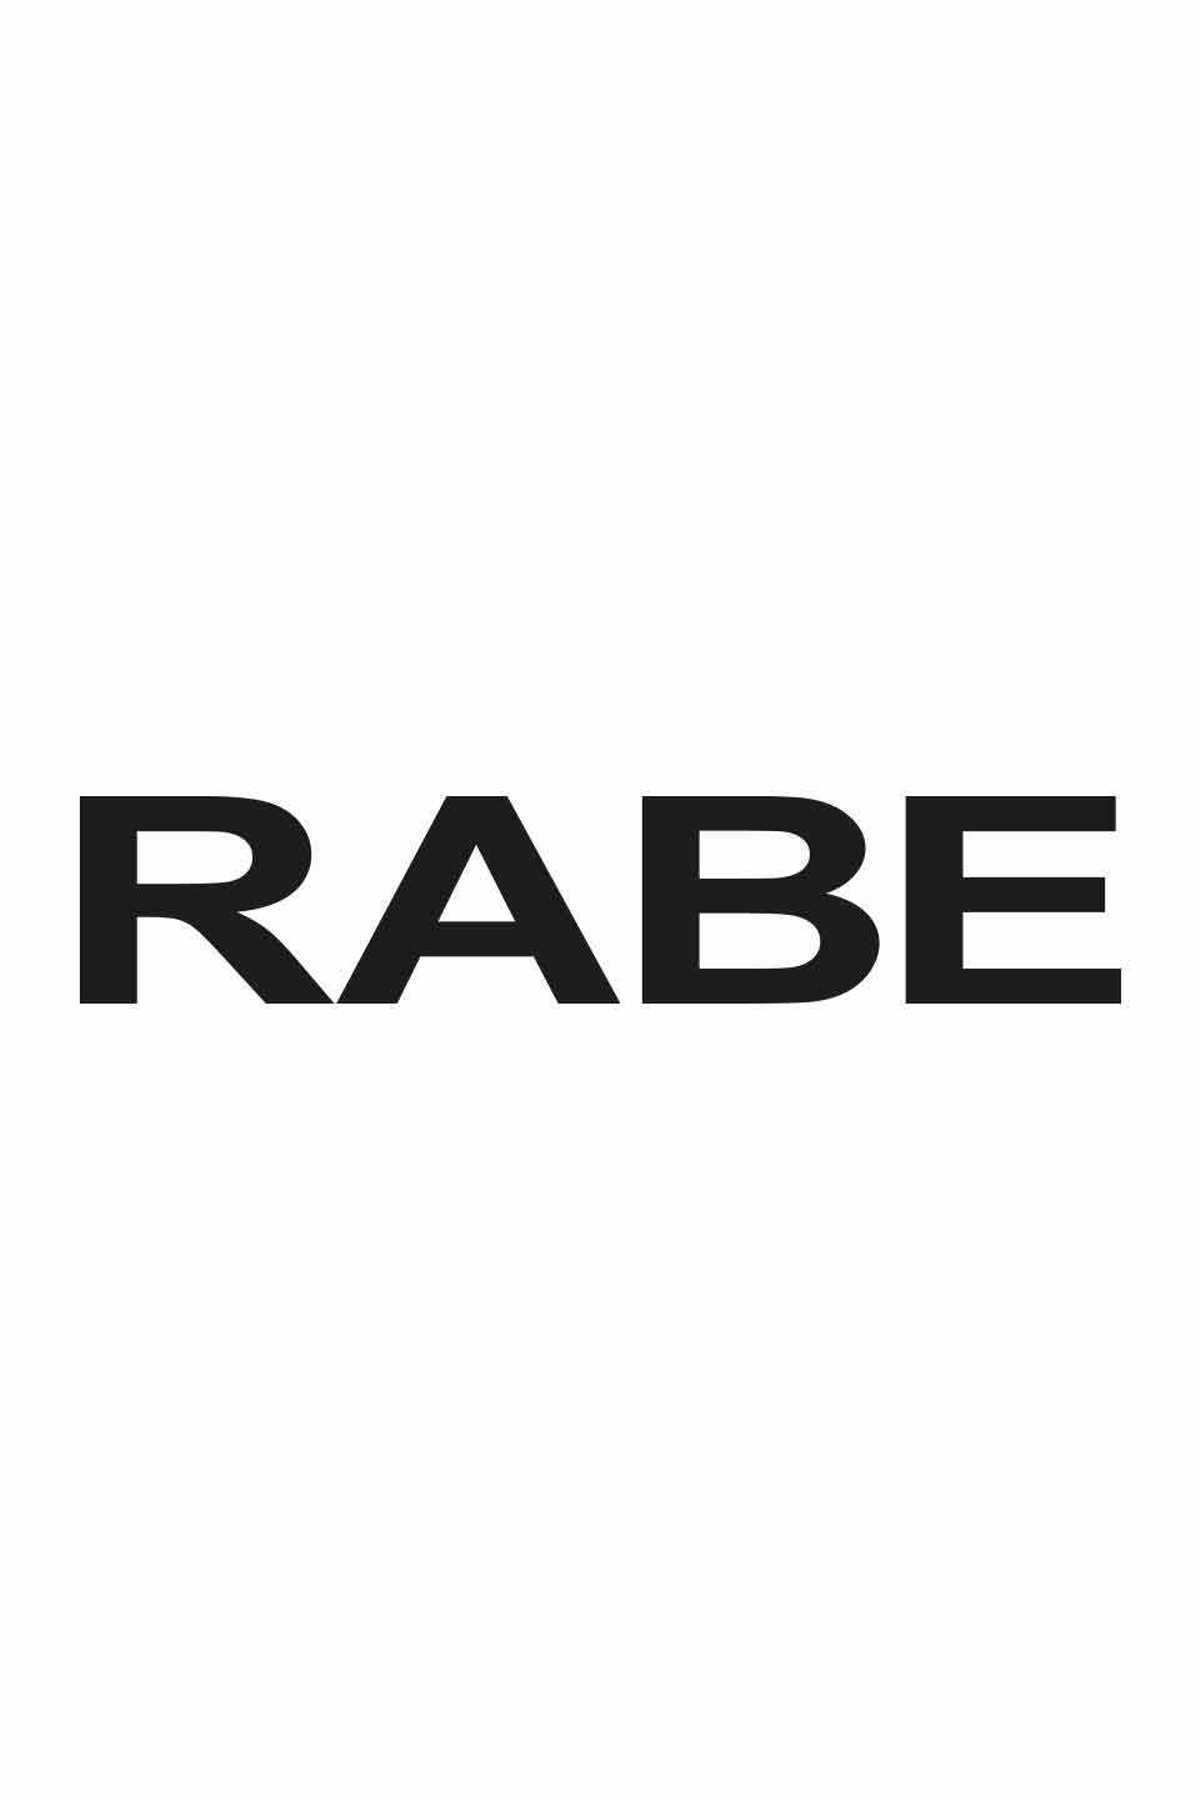 Rabe | Mode + Schuh Schuhe Markenmode Kämpf und 